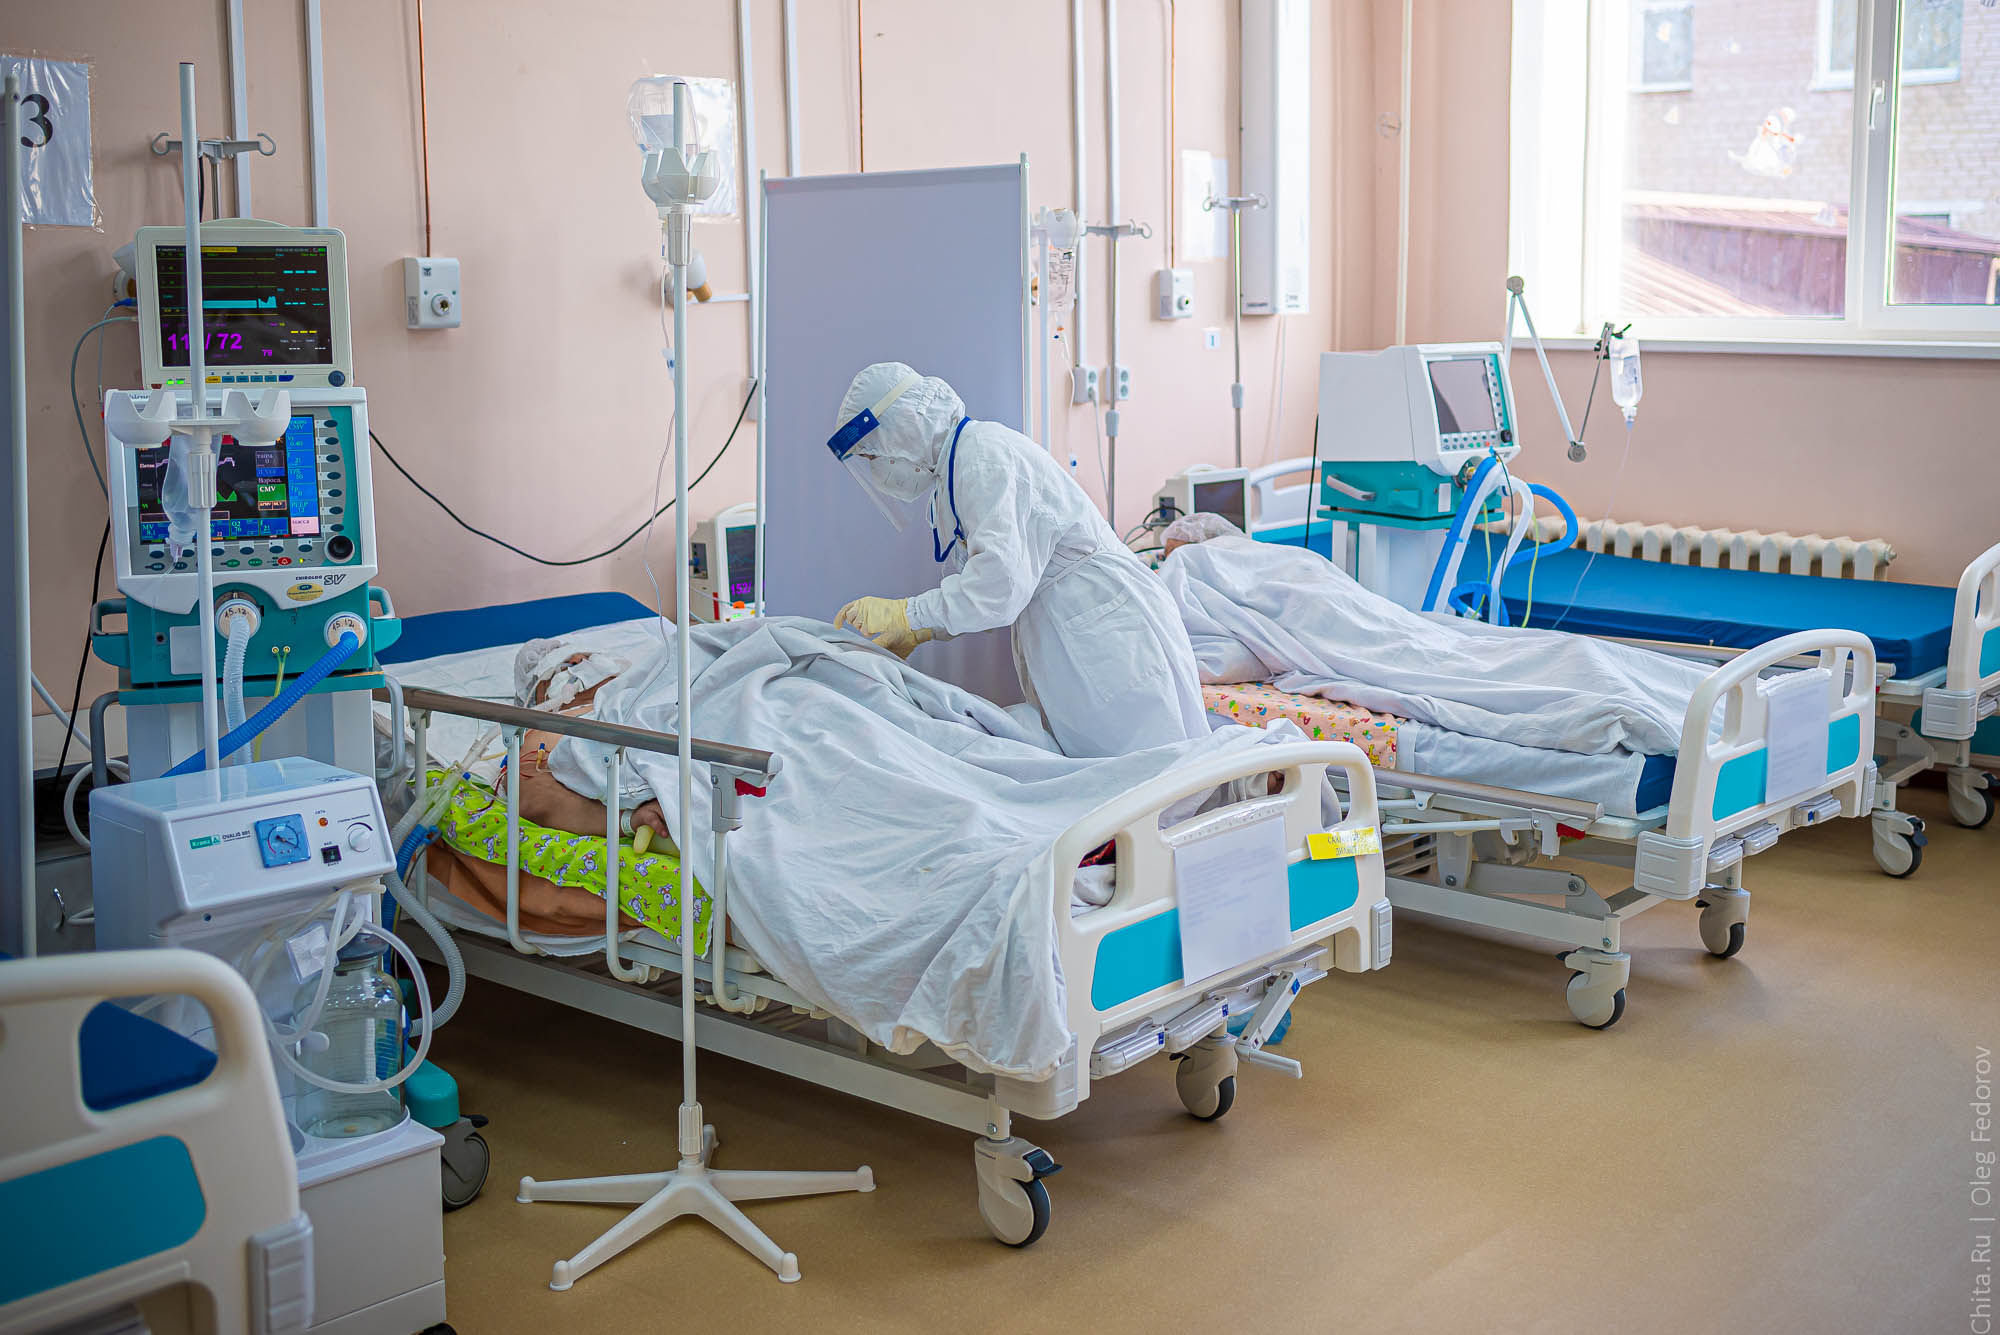 Женщина, которую госпитализировали с подозрением на корь в Чите, стабильна